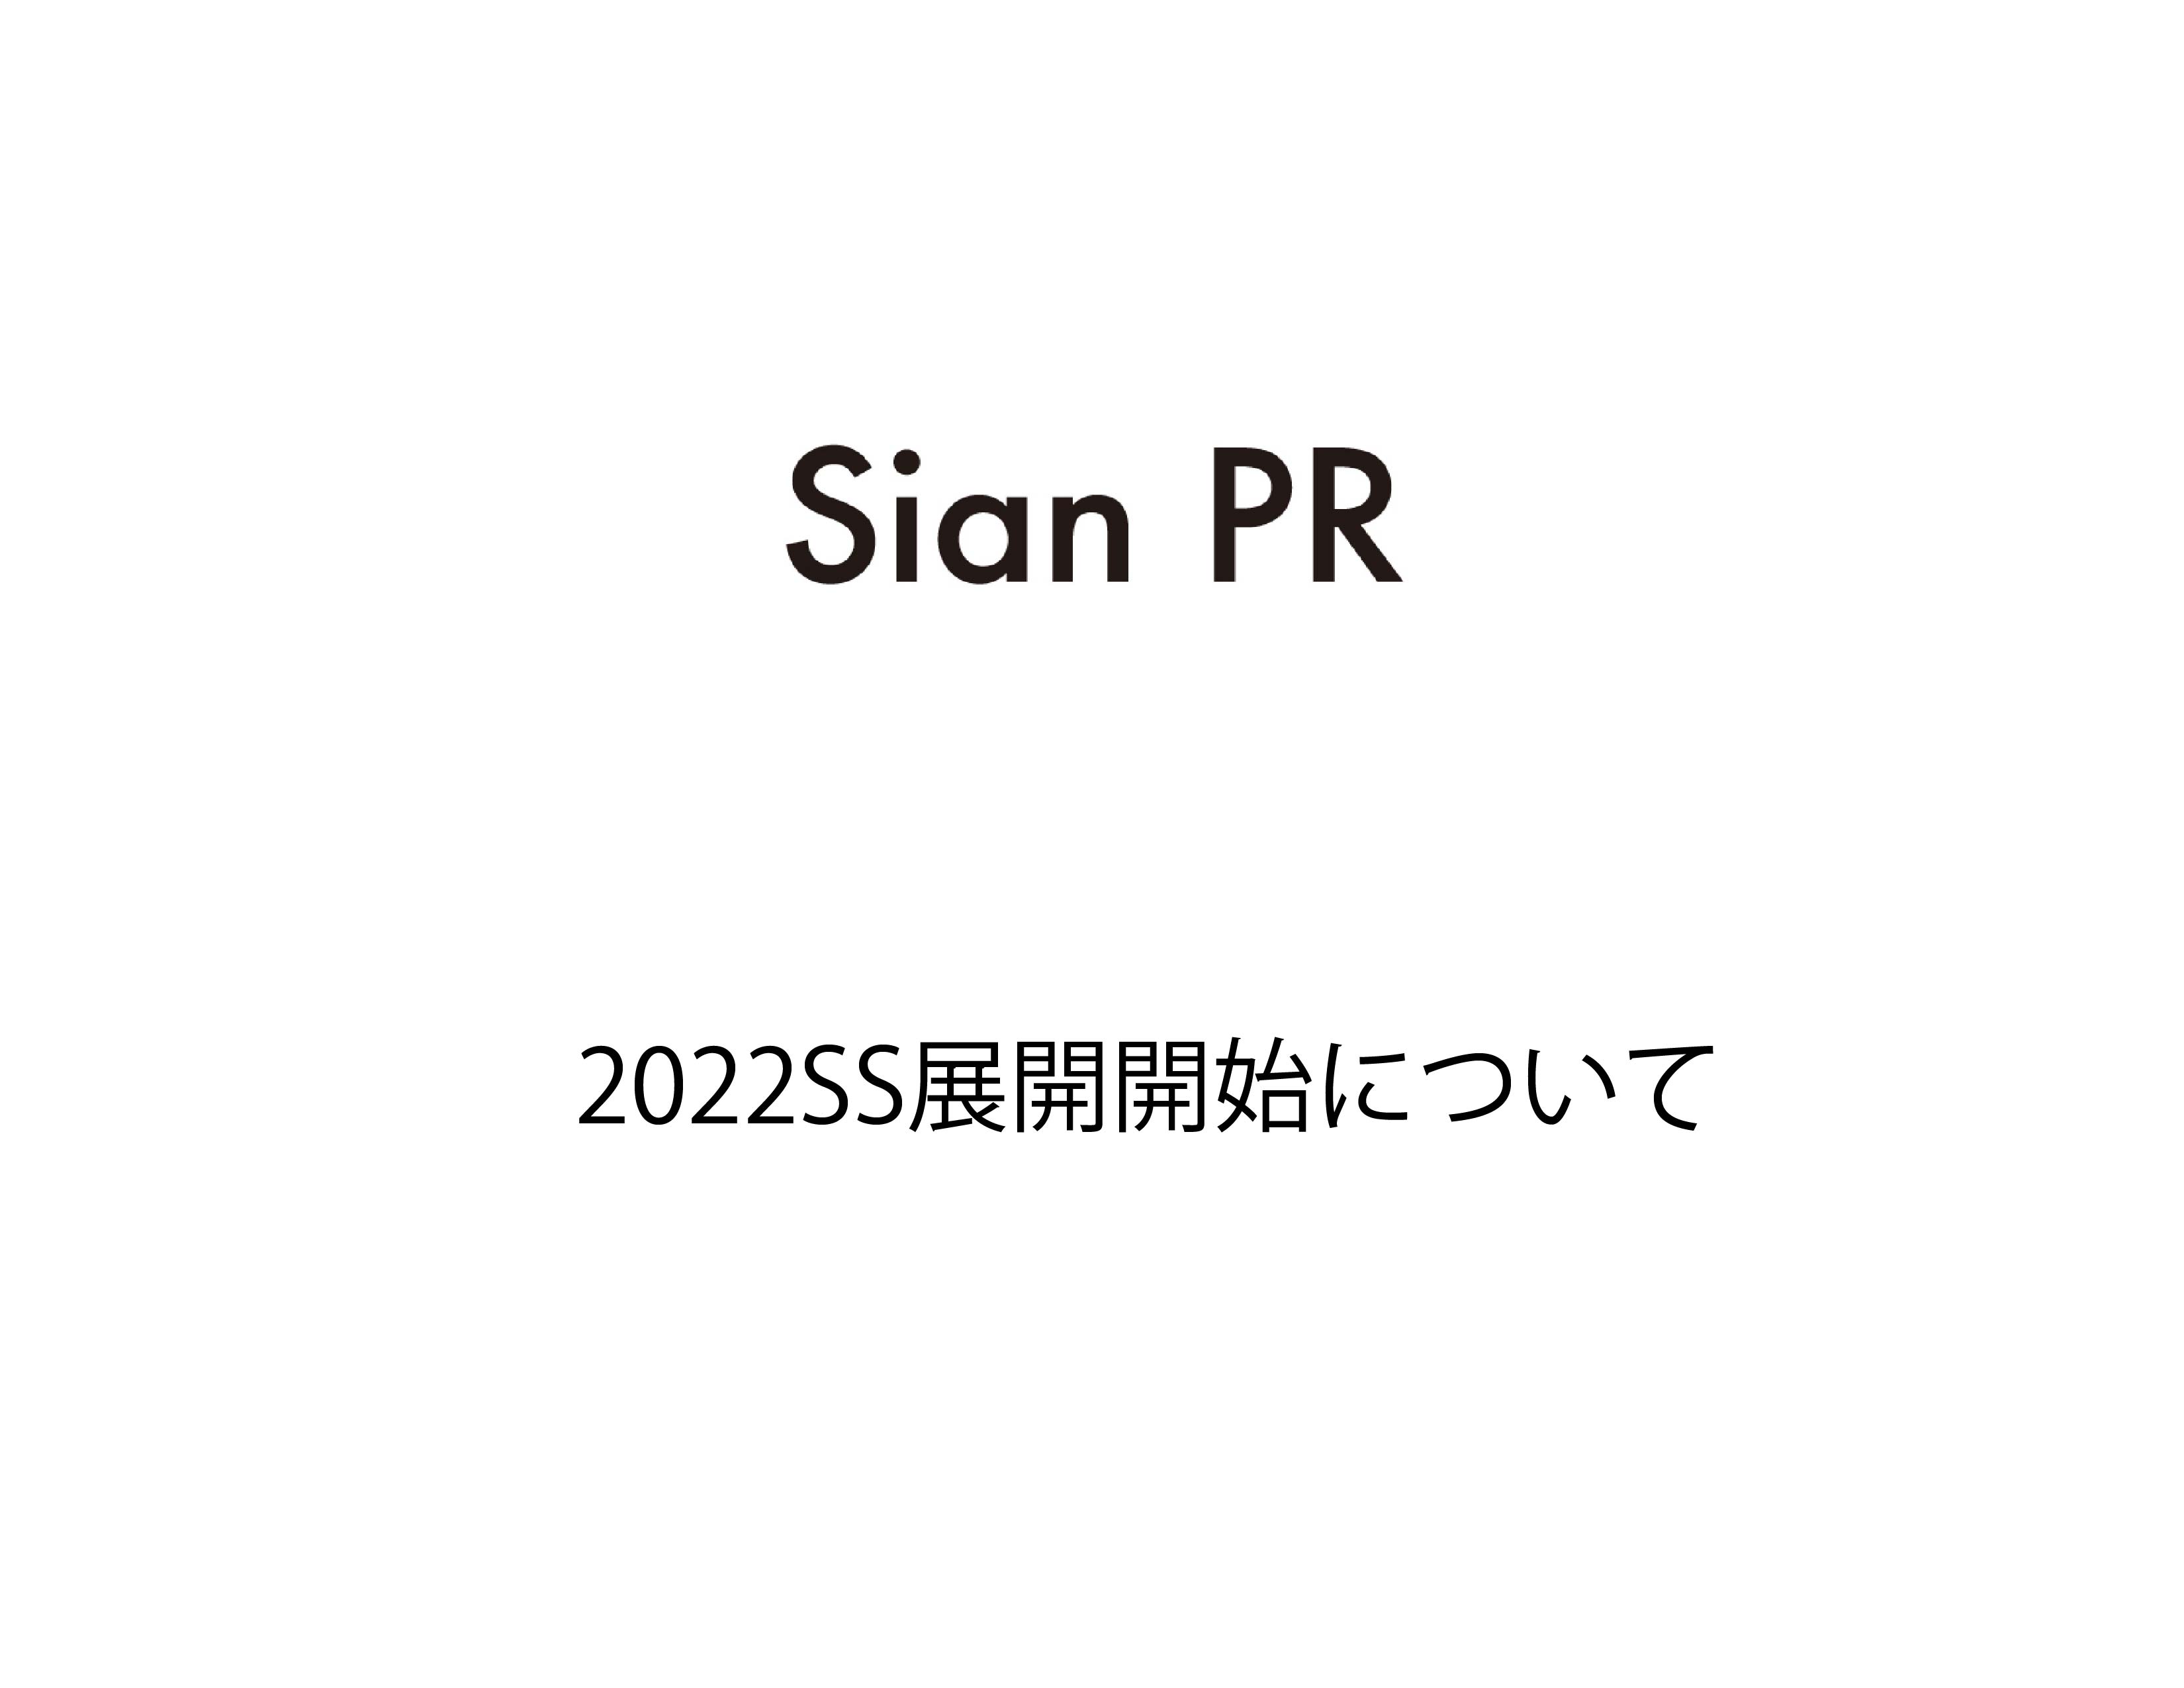 Sian PR 2022SS展開開始について